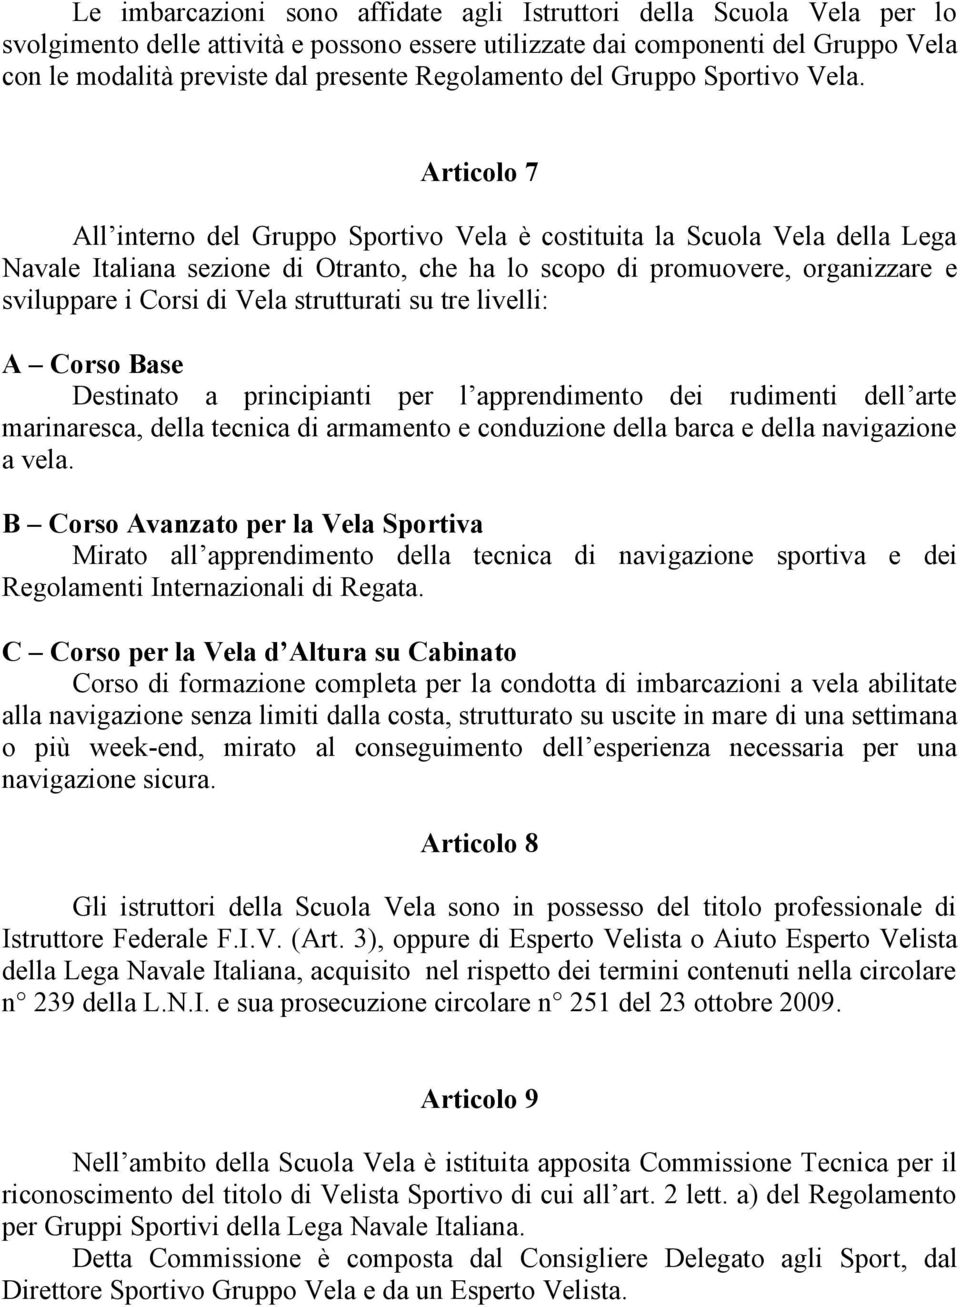 Articolo 7 All interno del Gruppo Sportivo Vela è costituita la Scuola Vela della Lega Navale Italiana sezione di Otranto, che ha lo scopo di promuovere, organizzare e sviluppare i Corsi di Vela